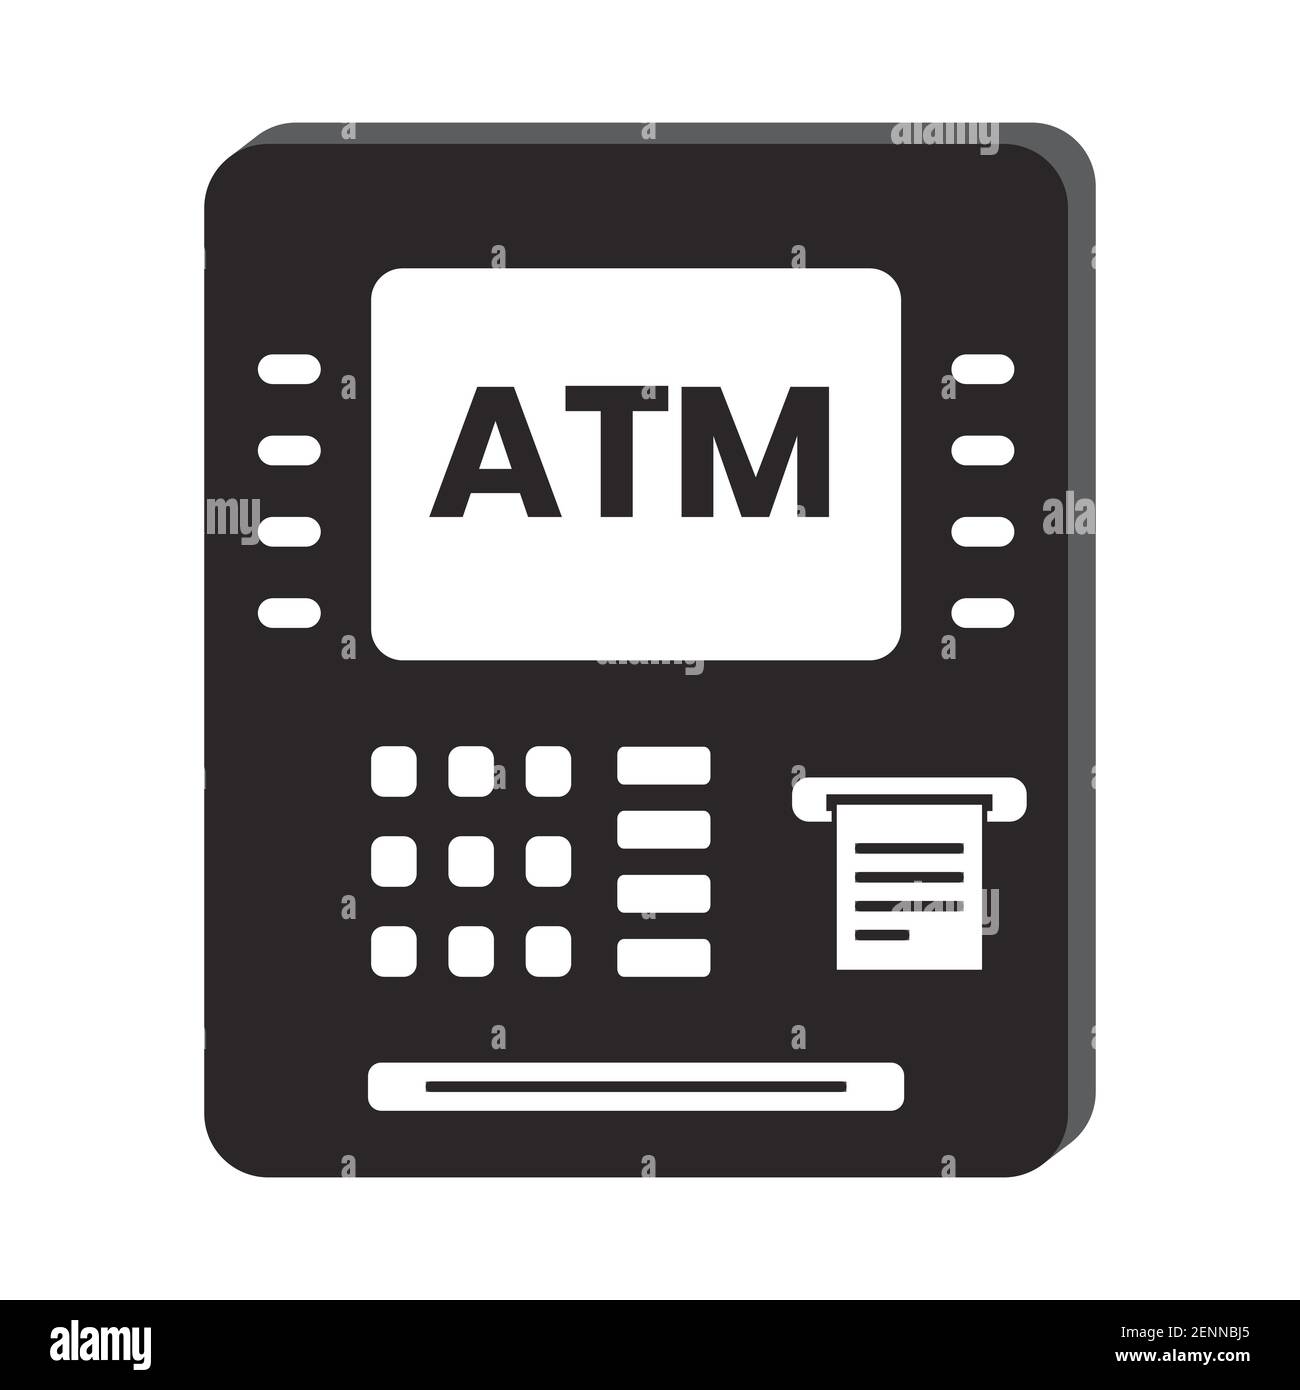 Icône de vecteur plat ATM (Automated Teller machine) pour les applications ou sites web Illustration de Vecteur